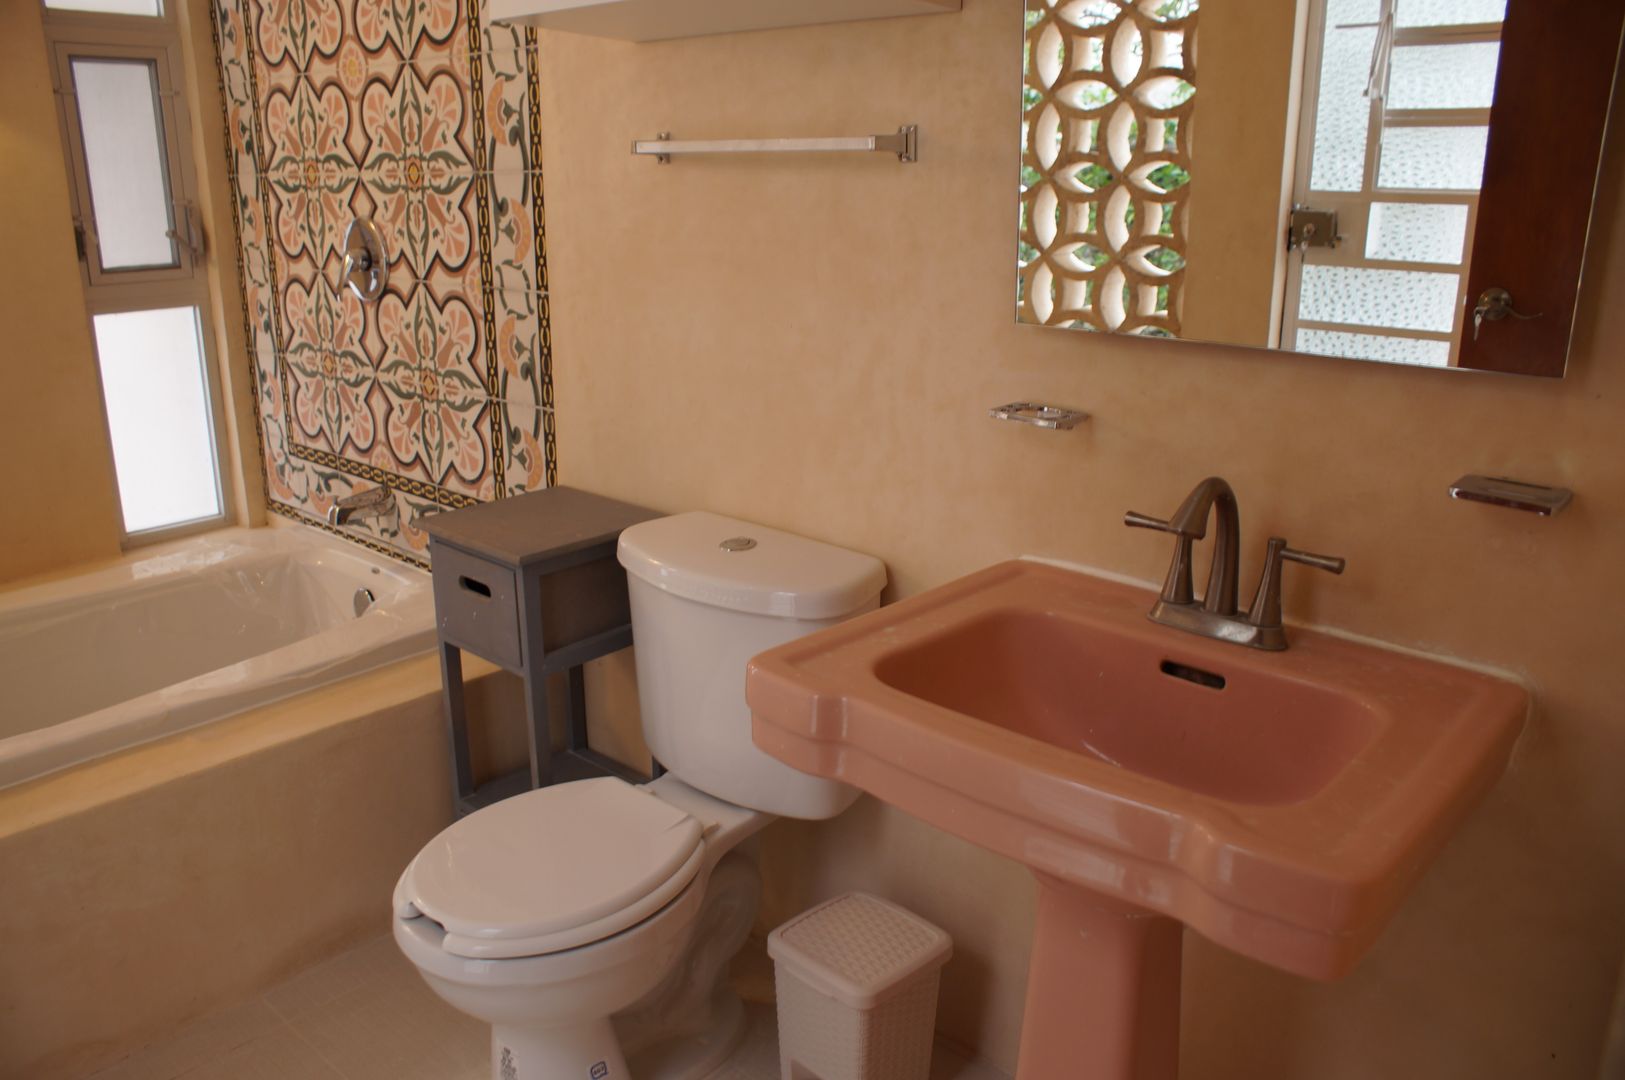 B&B "La Galería", Escaleno Taller de Diseño Escaleno Taller de Diseño Eclectic style bathroom